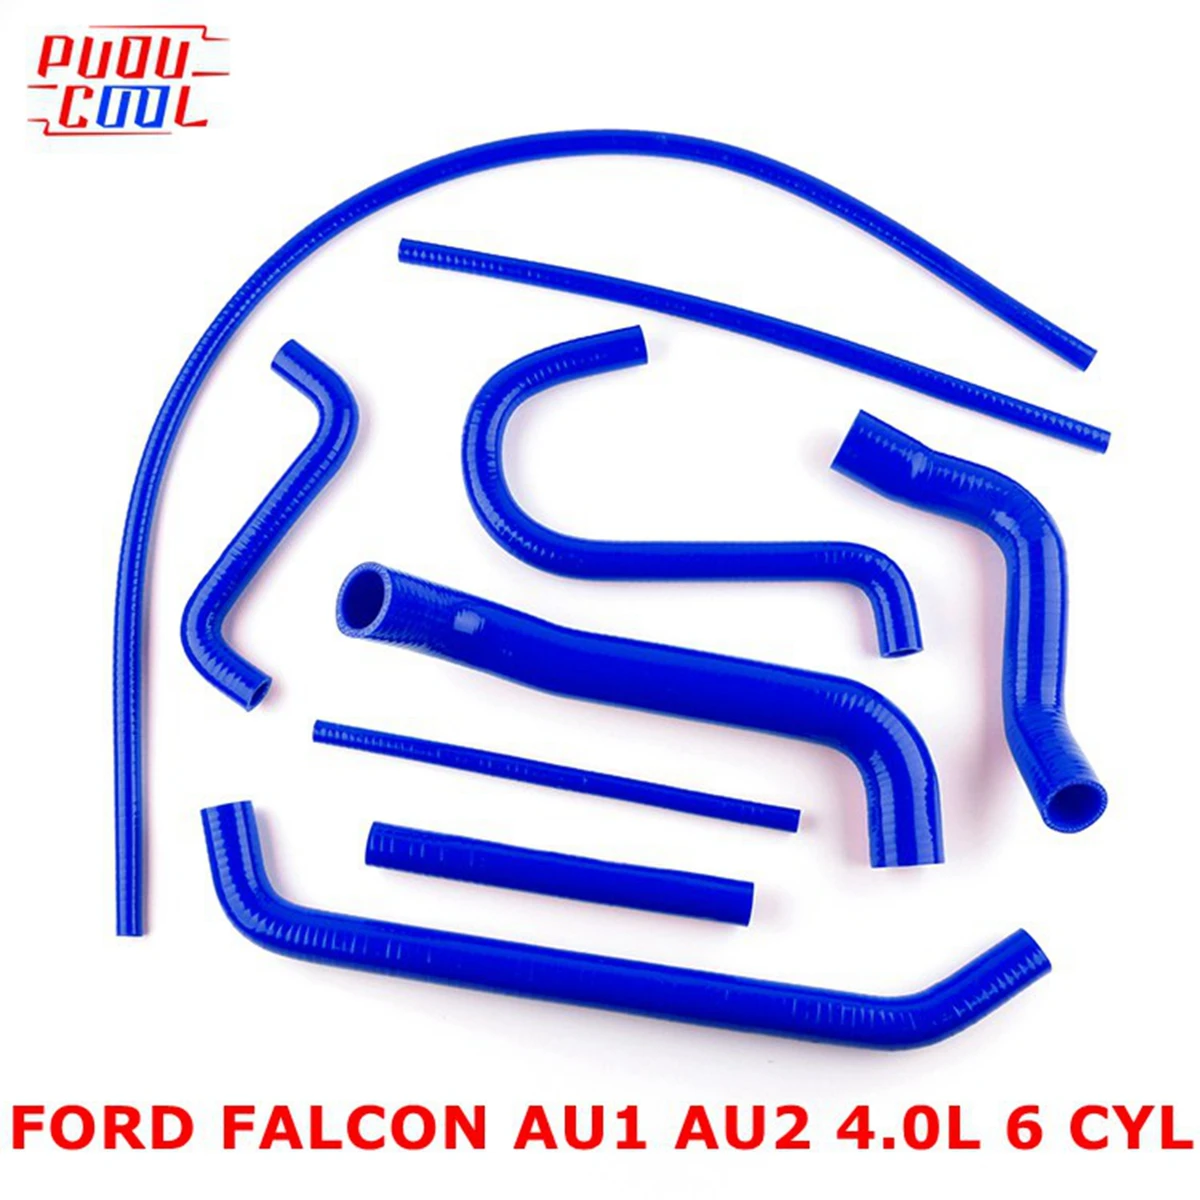 

For Ford Falcon AU1 AU2 4.0L 6 CYL 1998-2002 1999 2000 2001 Silicone Radiator Coolant Pipe Tube Hoses Kit 9Pcs 10 Colors